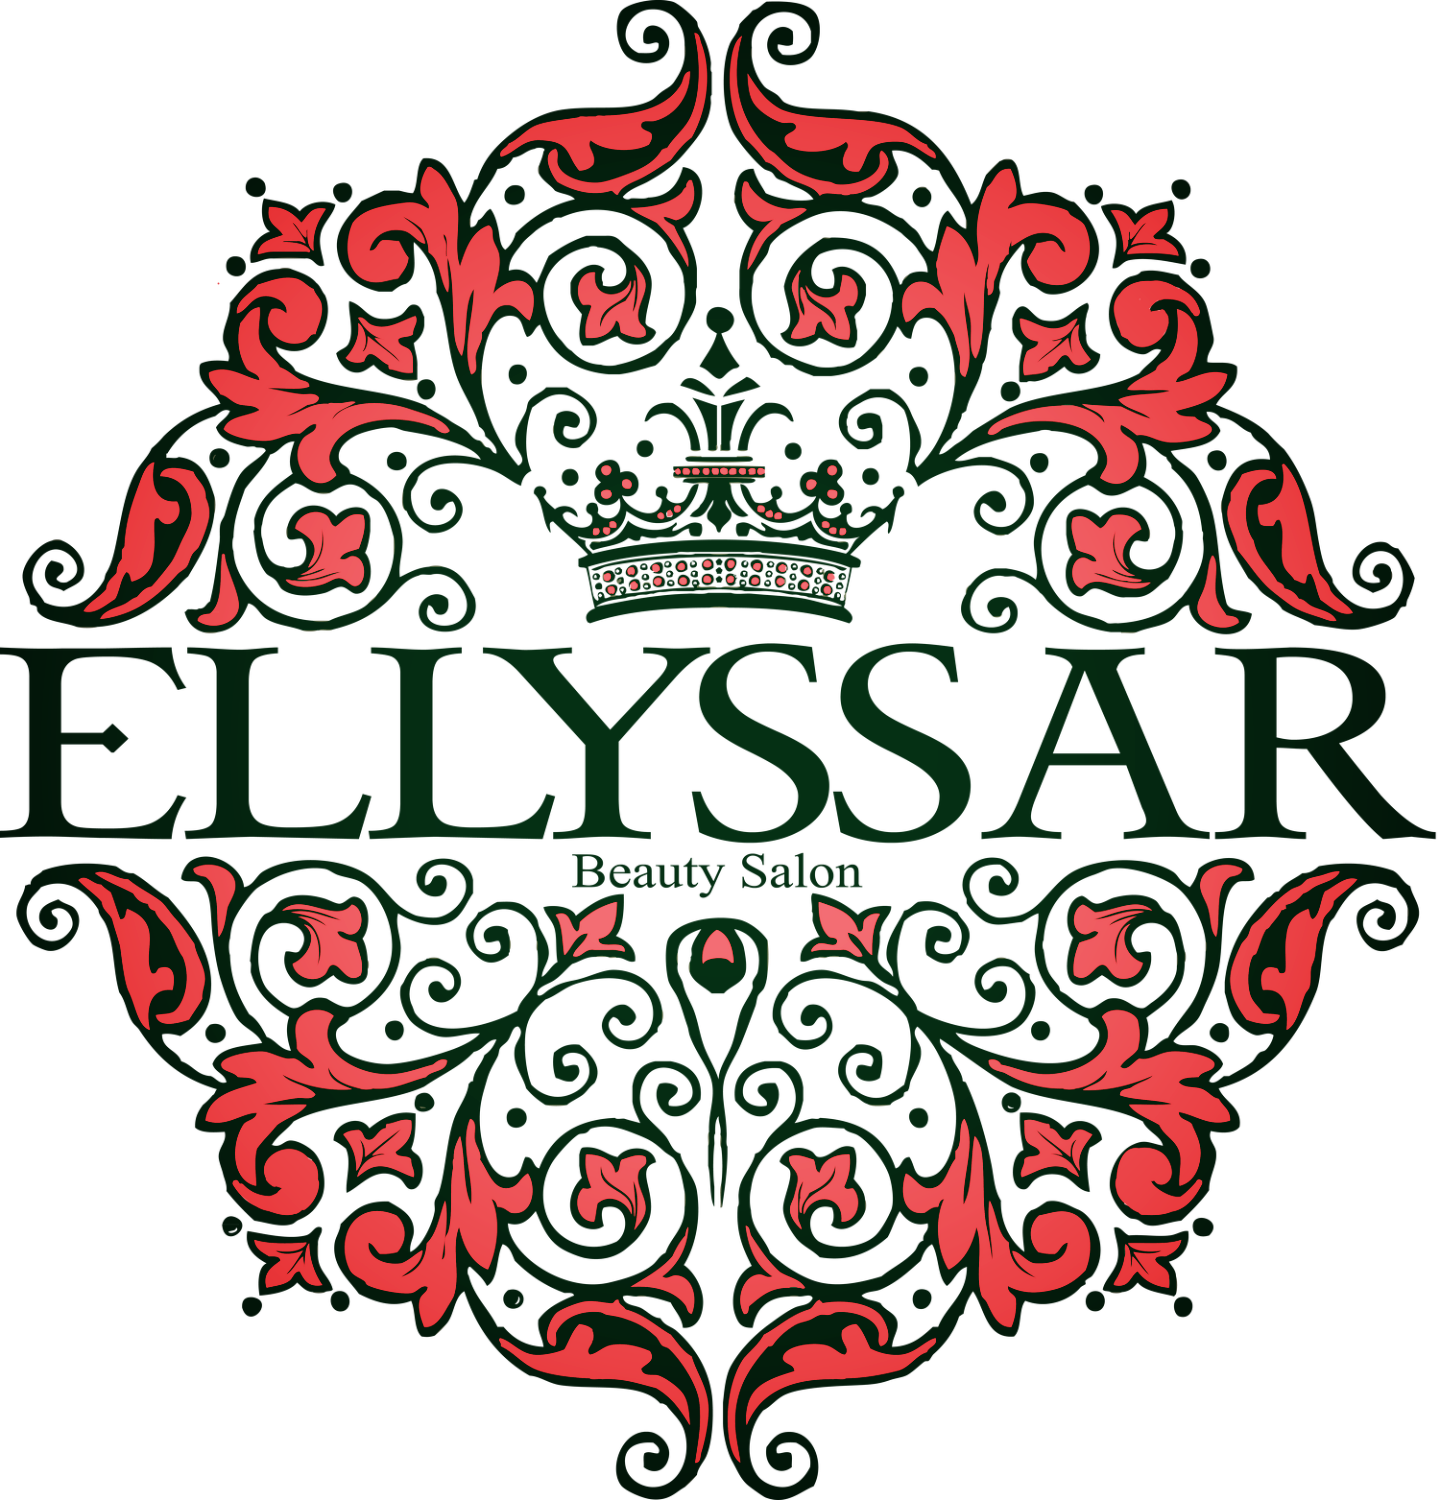 Ellyssar Beauty Salon (1440x1500)